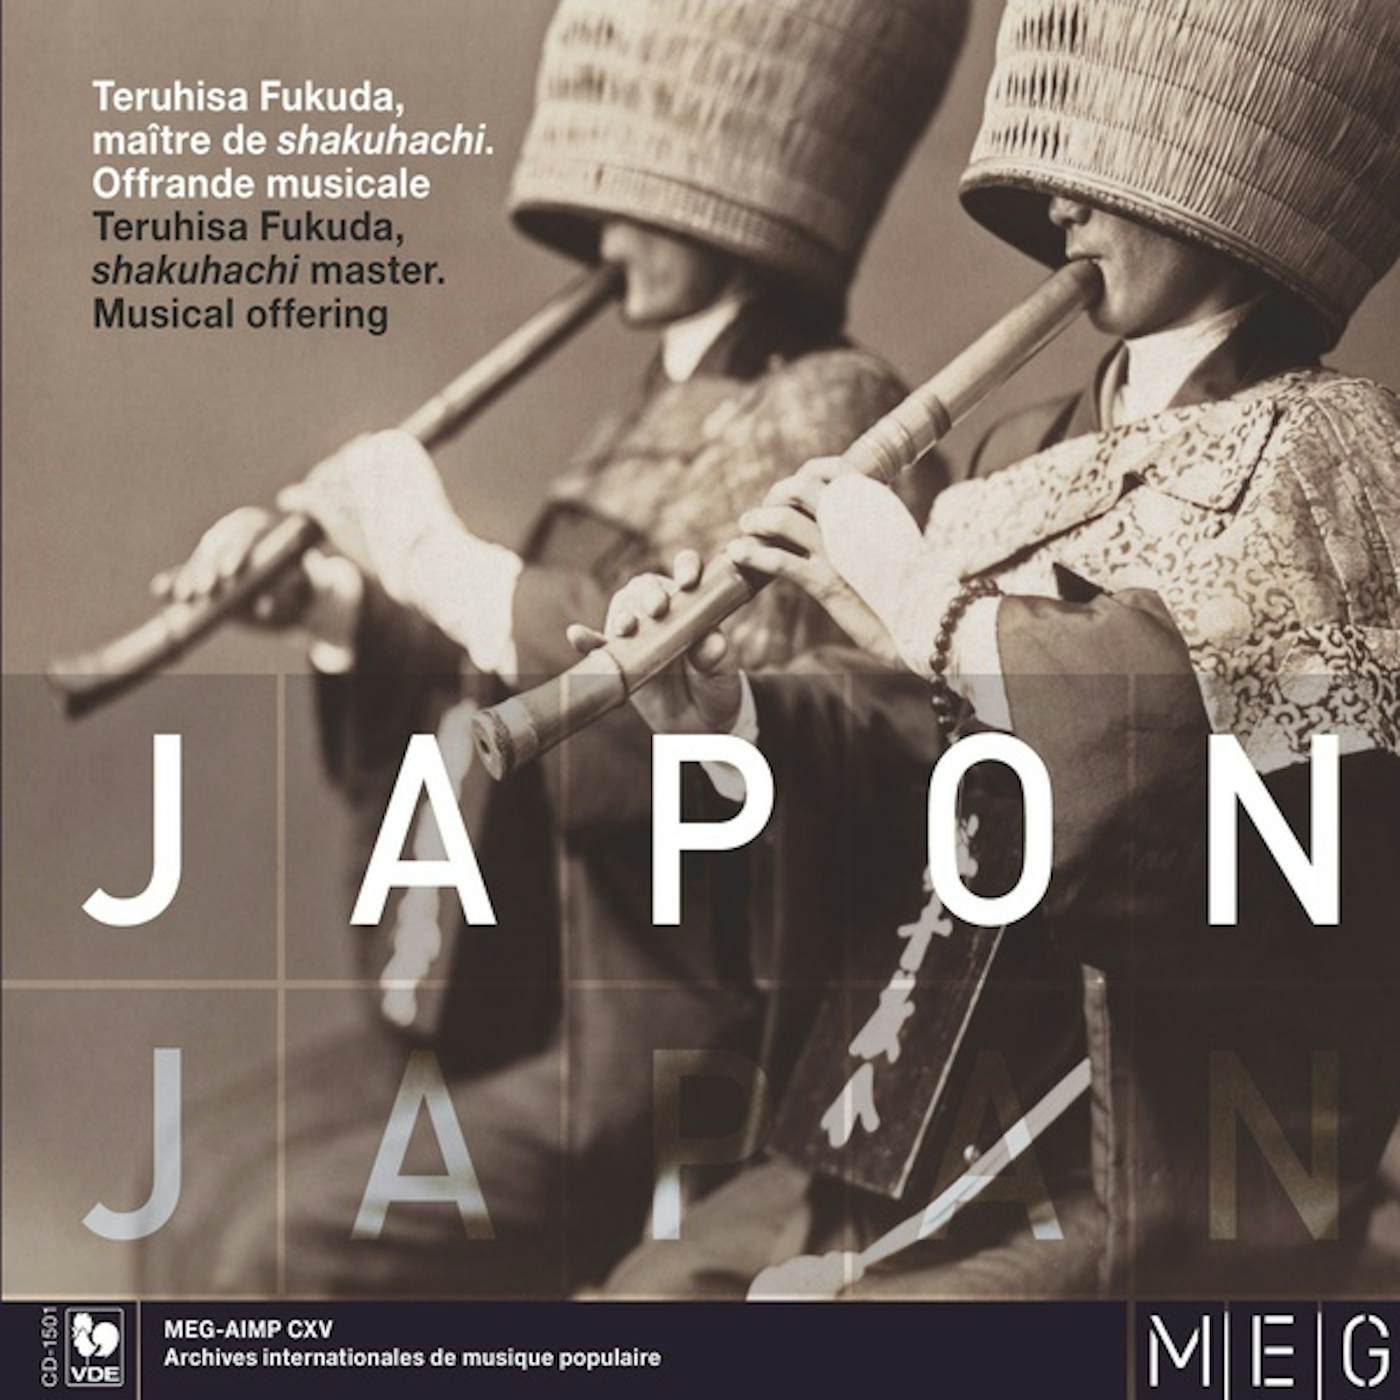 Teruhisa Fukuda Japon (Japan) CD